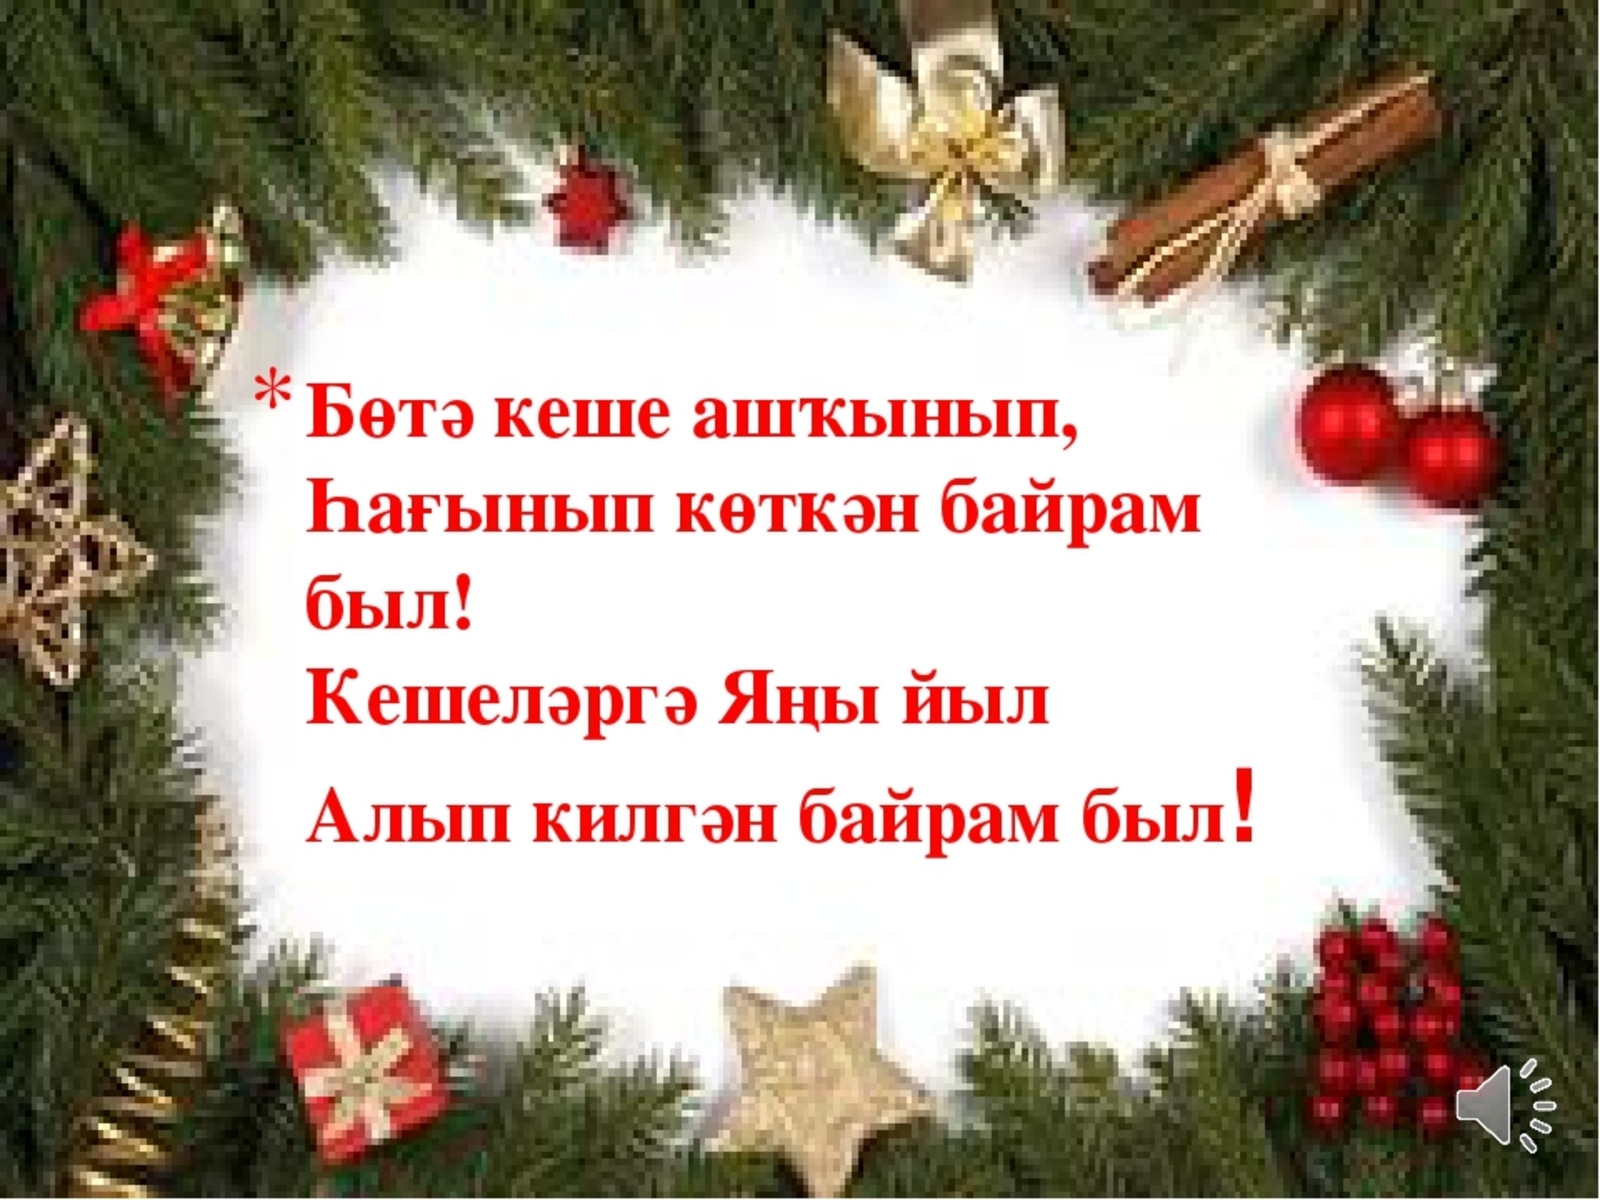 Поздравления с наступающим на татарском. Поздравление с новым годом на башкирском. Поздравление с новым годом на башкирском языке. Новогодние поздравления на башкирском языке. Поздравление на новый год на башкирском языке.